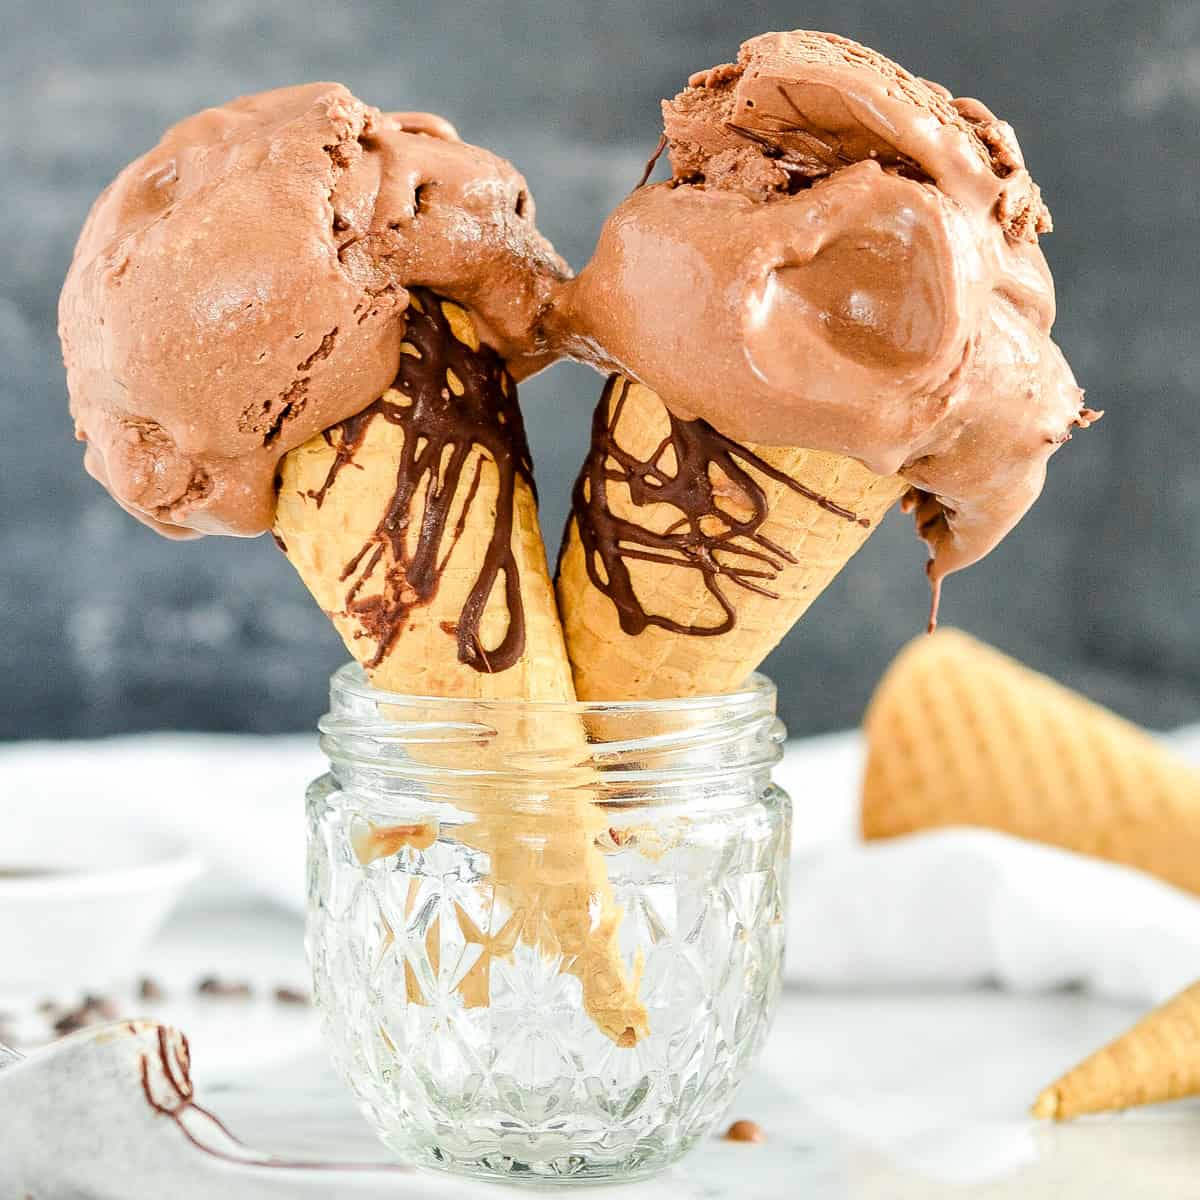 two ice cream cones with Paleo Chocolate Ice Cream